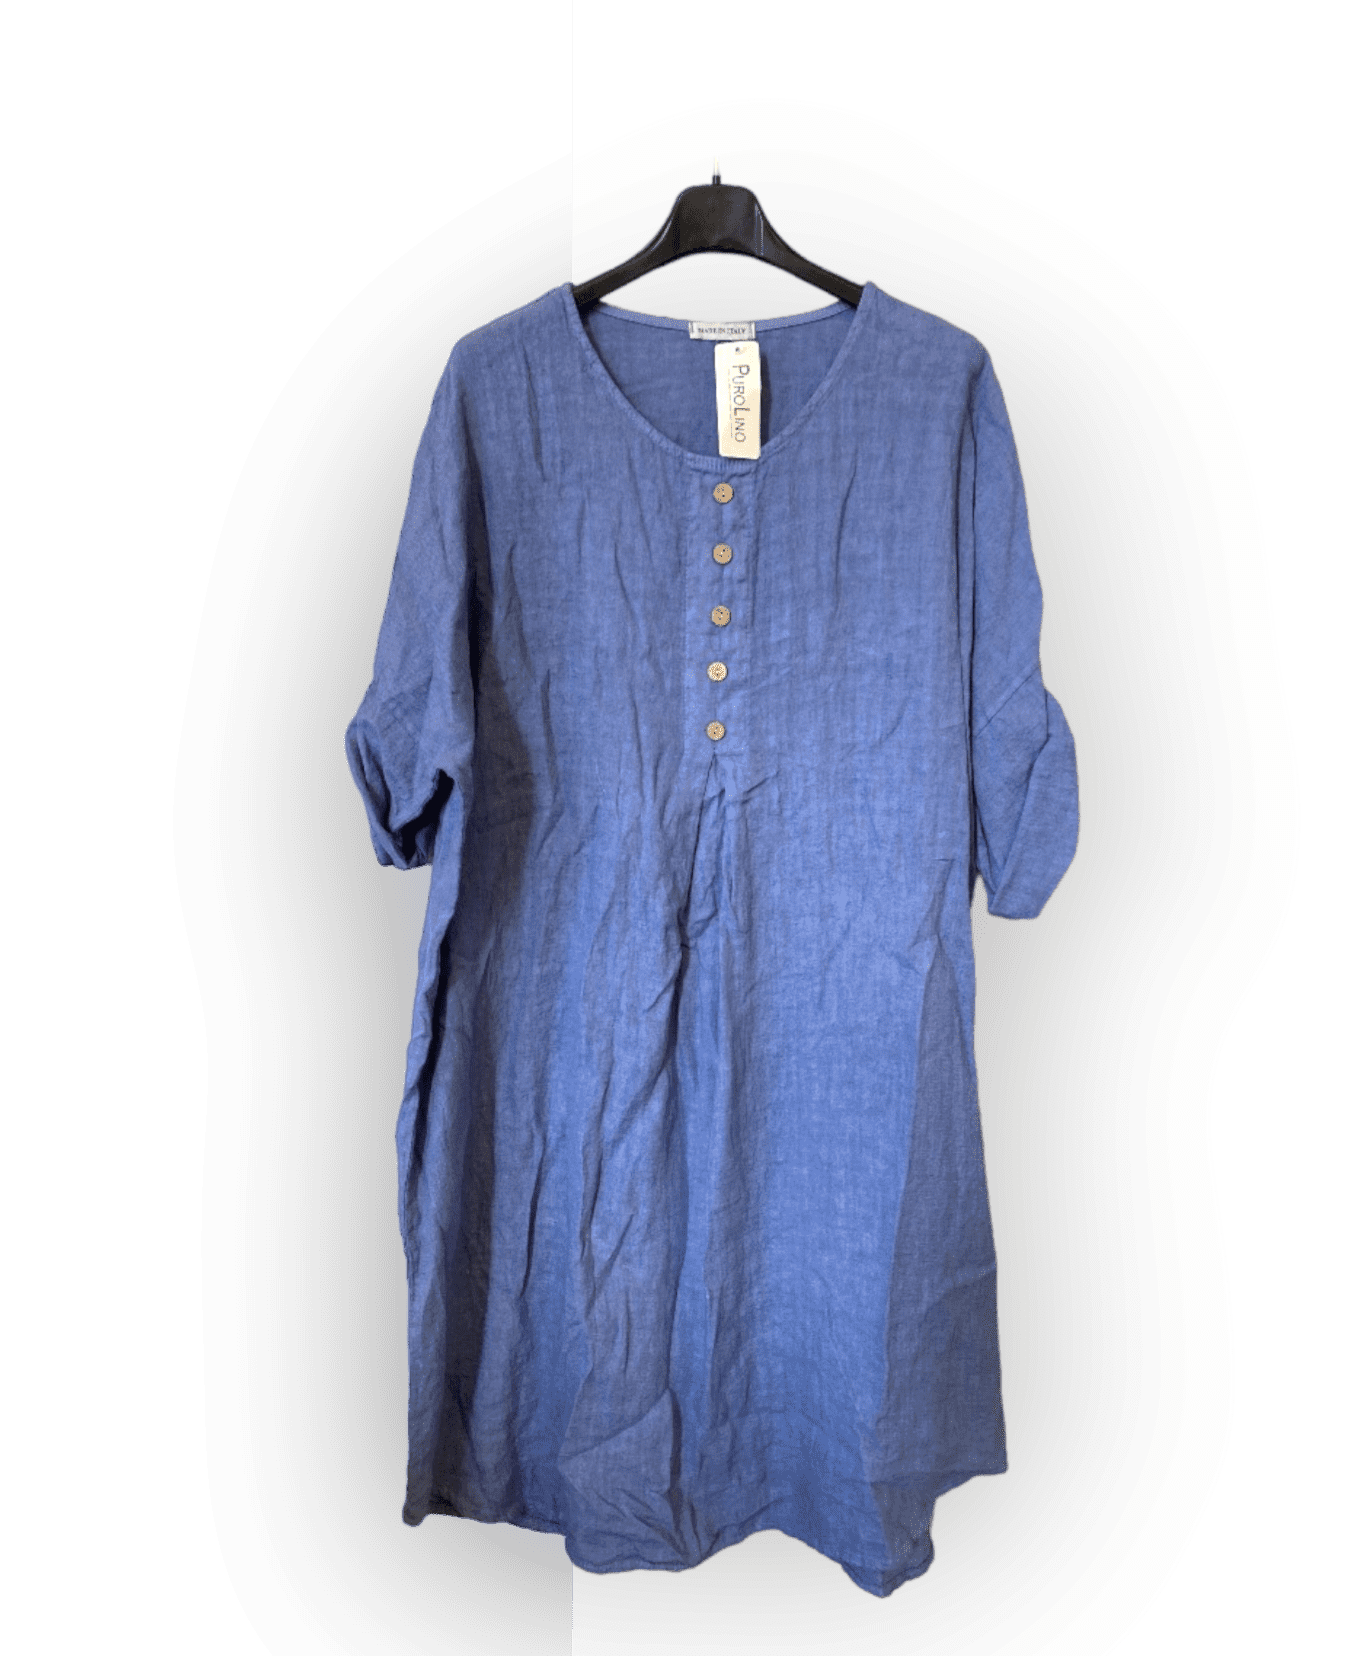 Mooi 100% linnen jurk met korte mouwen en knoppen voorkant - BLAUW kleur - maat 44/46